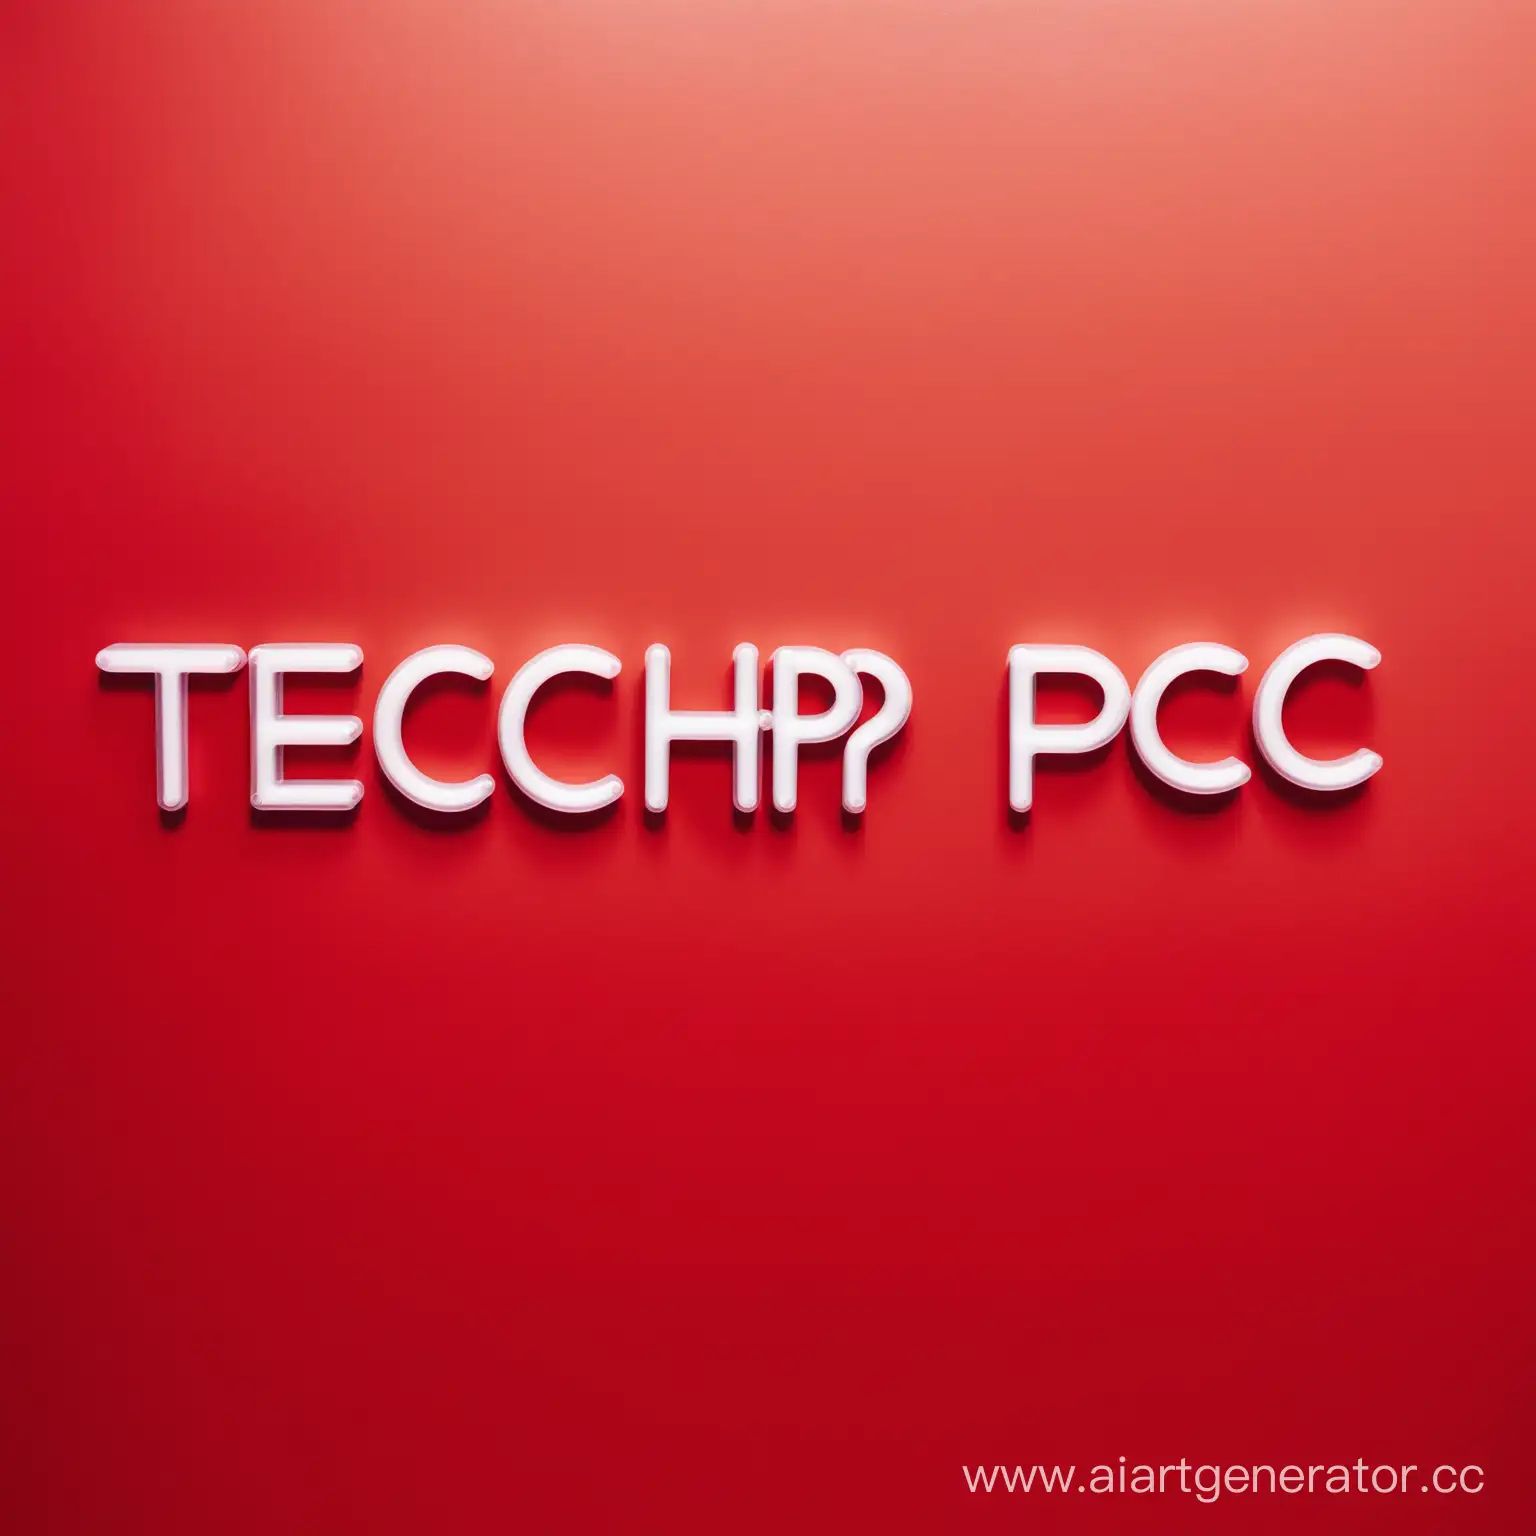 На красной стене красивыми нейлоновыми буквами написано TechPc